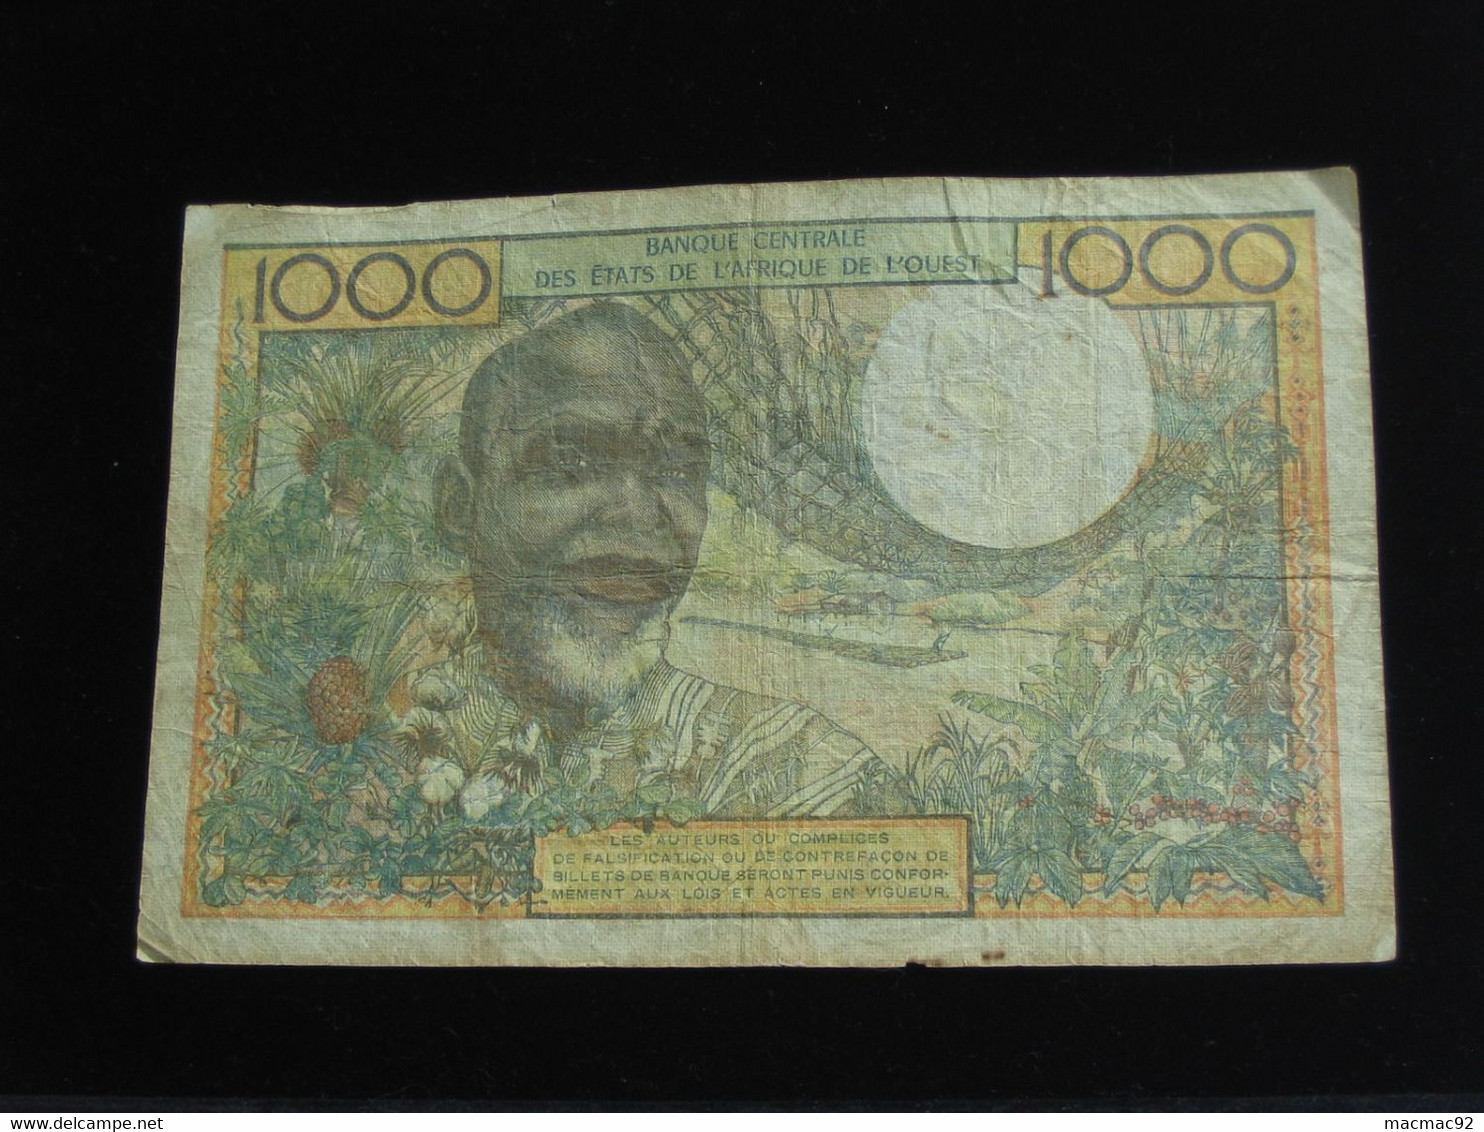 COTE D'IVOIRE - 1000 Francs Sans Date - Banque Centrale Des états De L'Afrique De L'ouest  **** EN  ACHAT IMMEDIAT  **** - Côte D'Ivoire